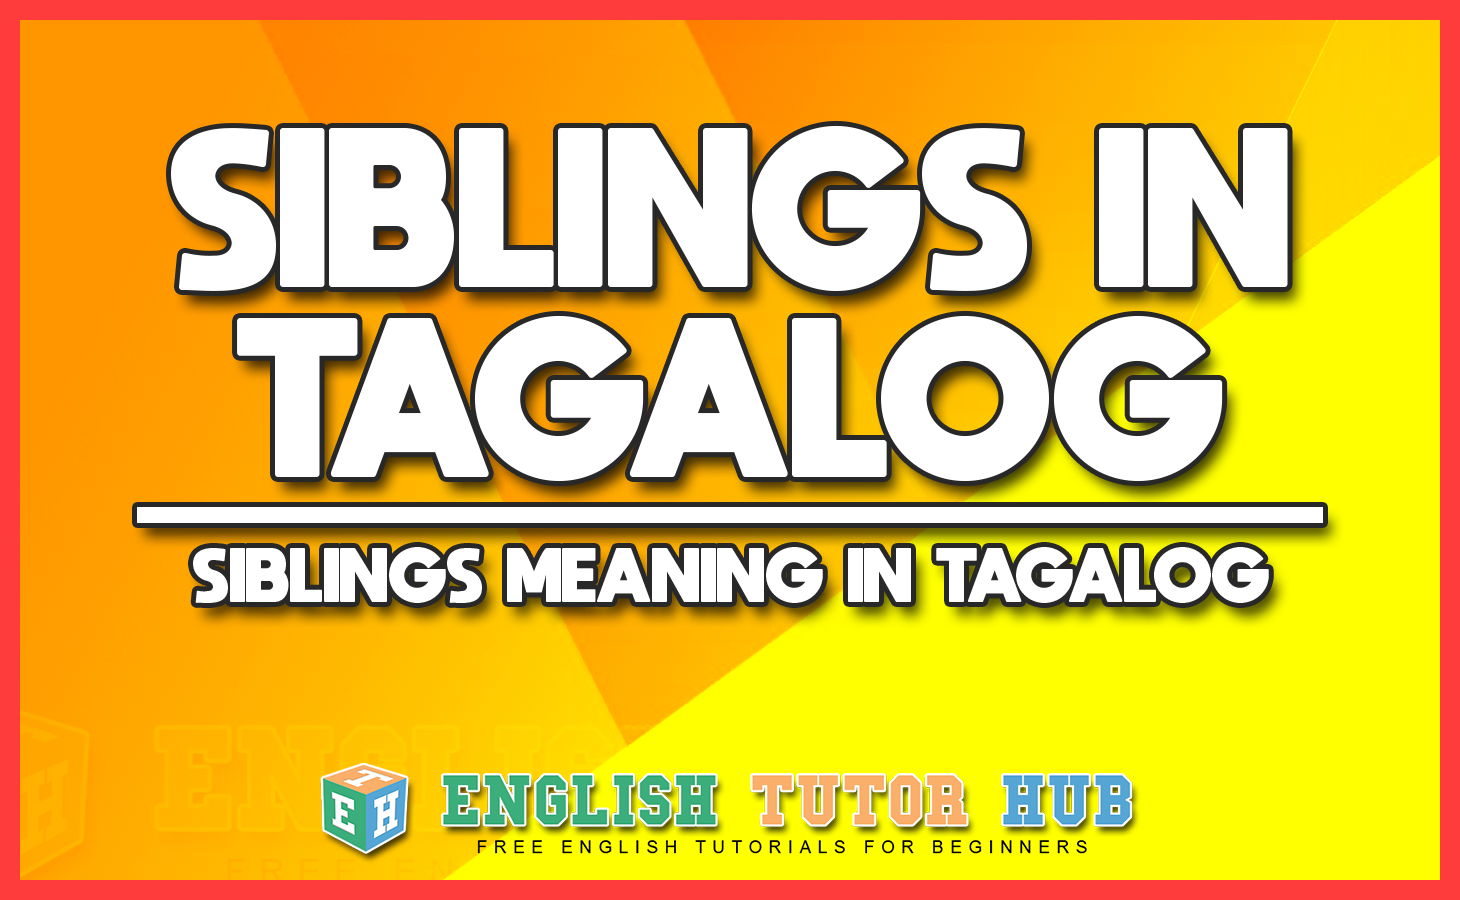 Siblings in Tagalog - Siblings Meaning in Tagalog